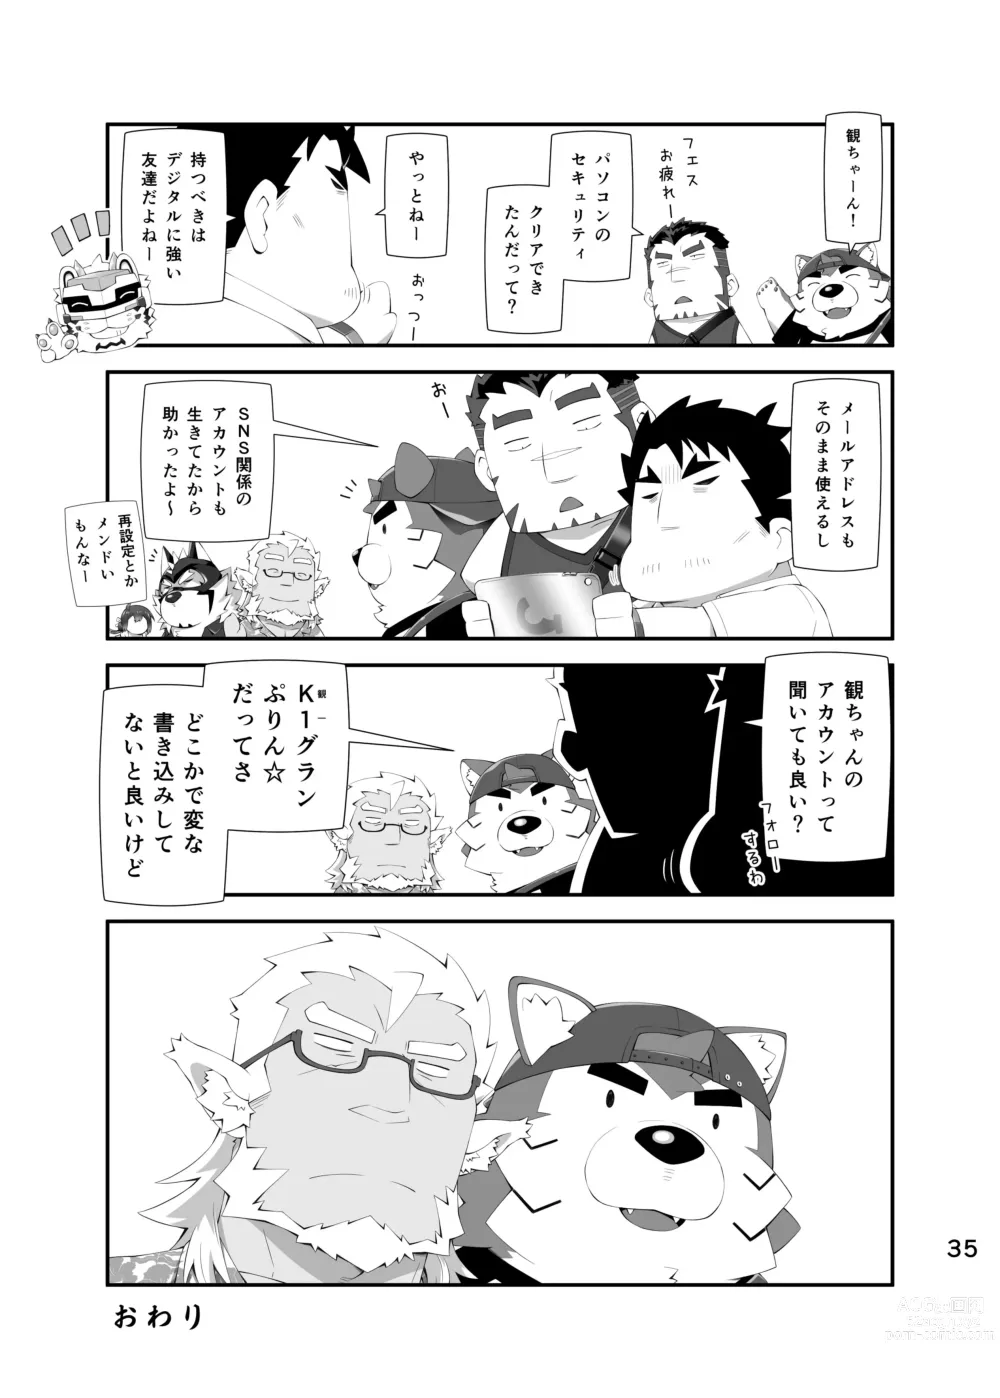 Page 34 of doujinshi LIVE AH ERO